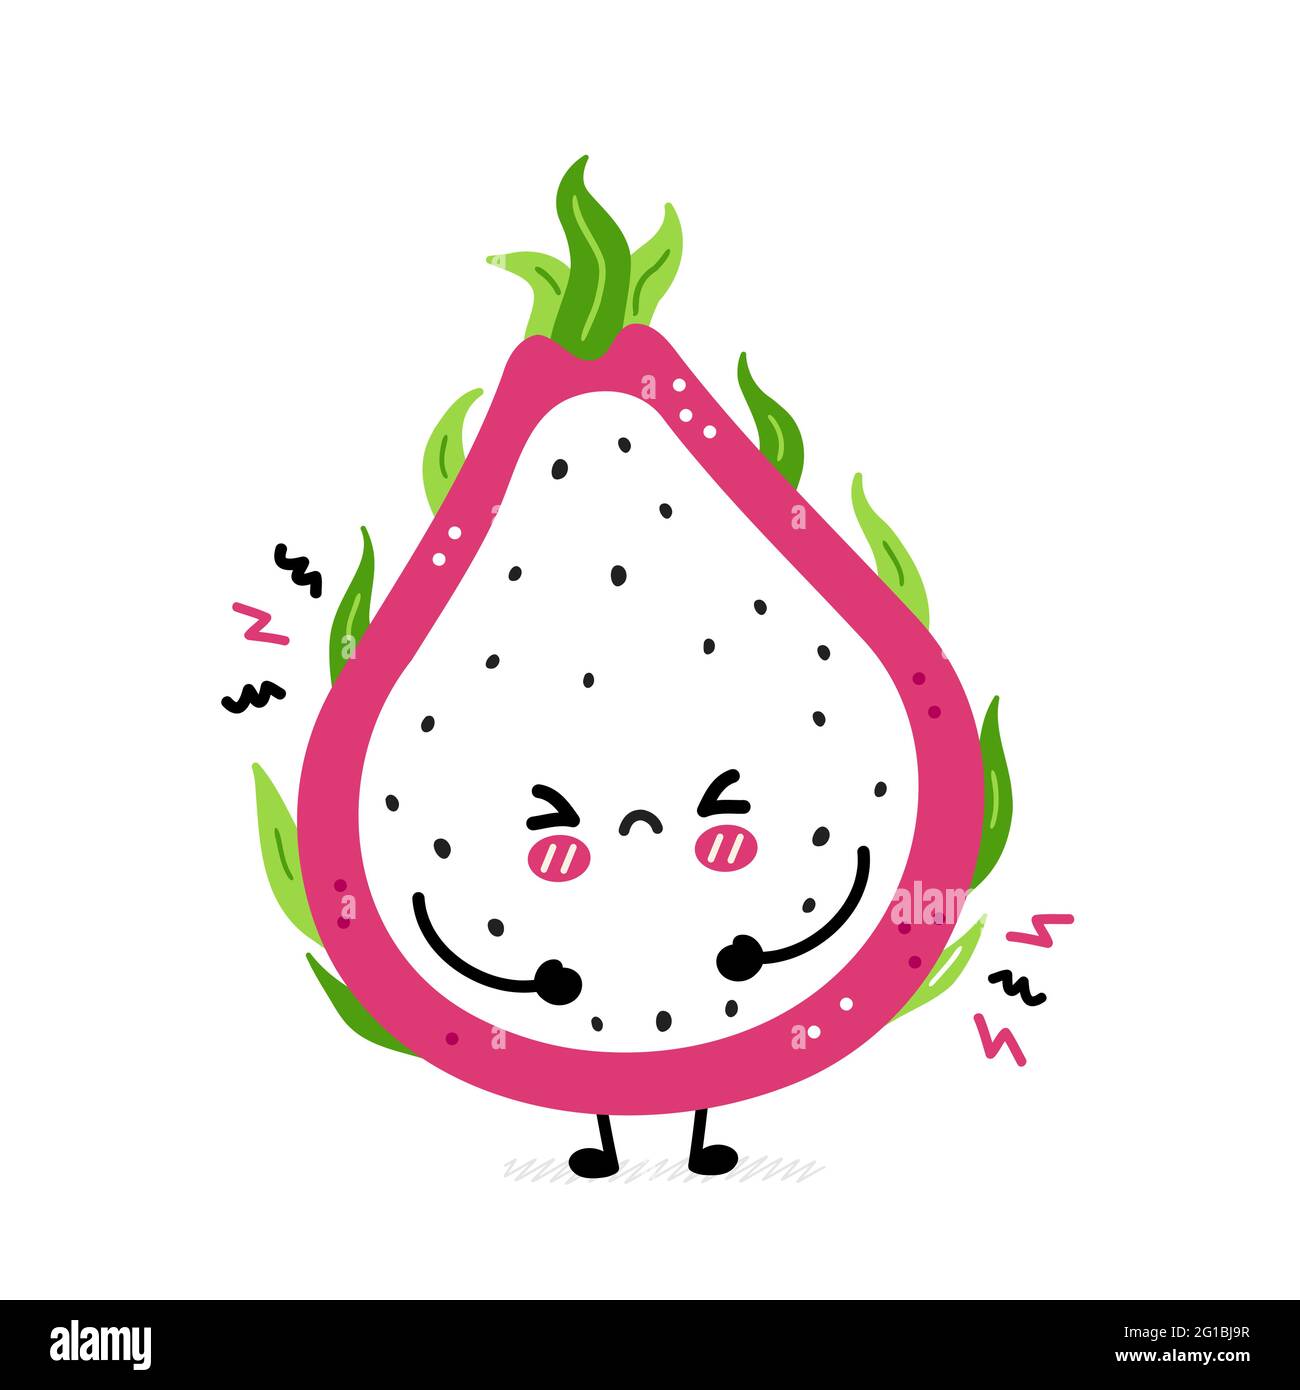 Nette lustige traurige Drachenfrucht. Vektor Hand gezeichnet Cartoon kawaii Charakter Illustration Symbol. Isoliert auf weißem Hintergrund. Drachenfrucht, exotisches Food-Charakter-Konzept Stock Vektor